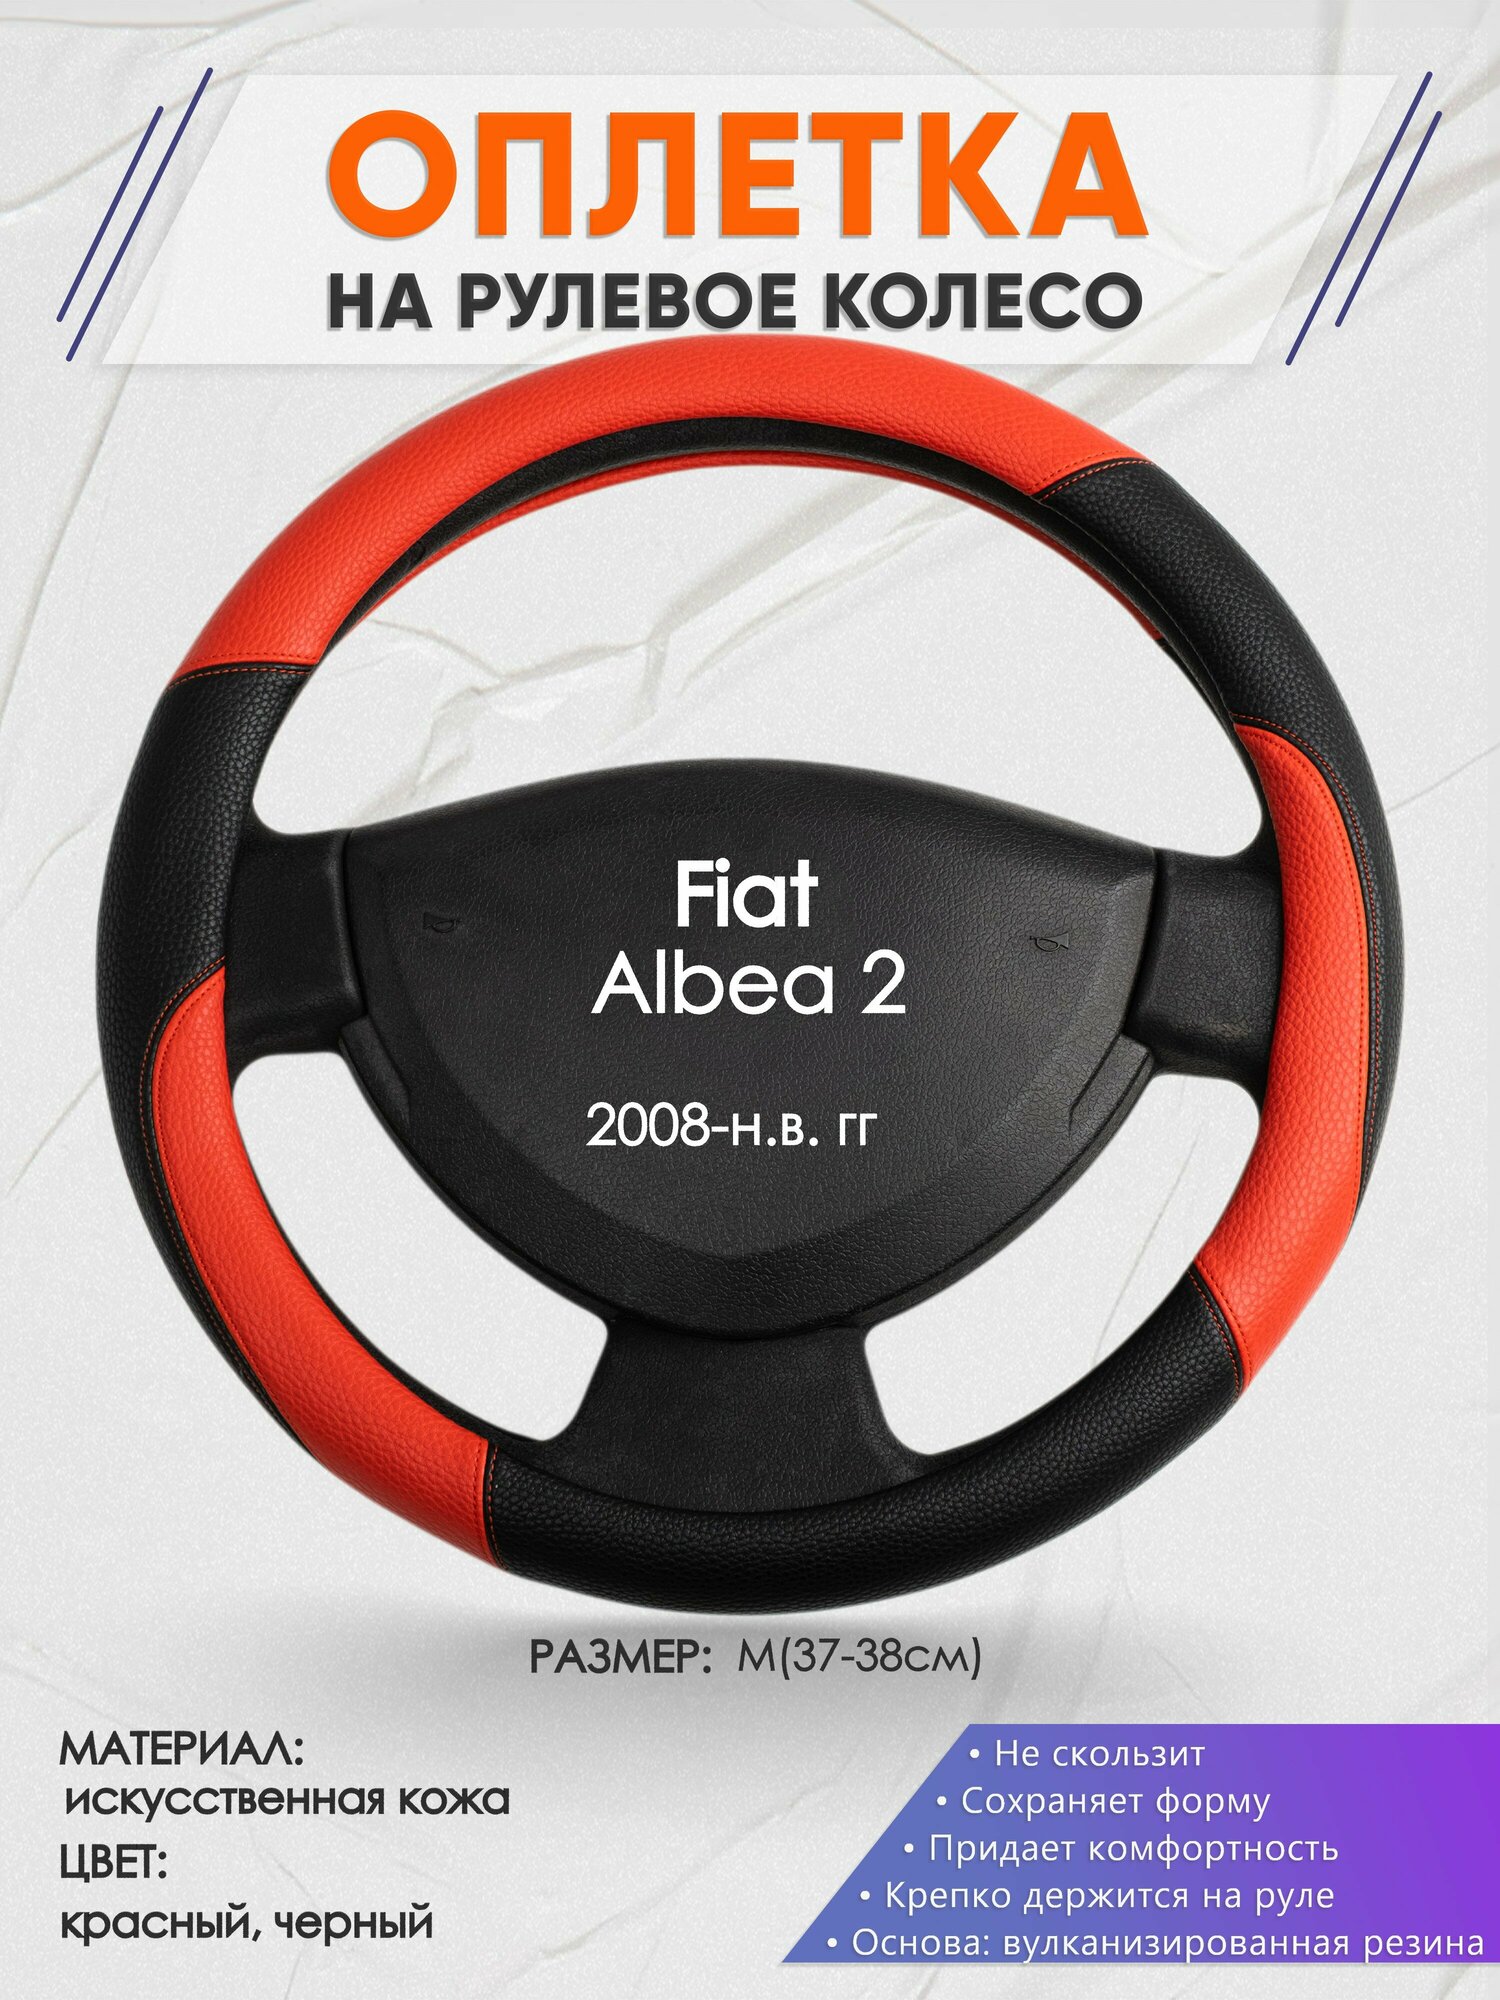 Оплетка на руль для Fiat Albea 2(Фиат Альбеа) 2008-н. в, M(37-38см), Искусственная кожа 63